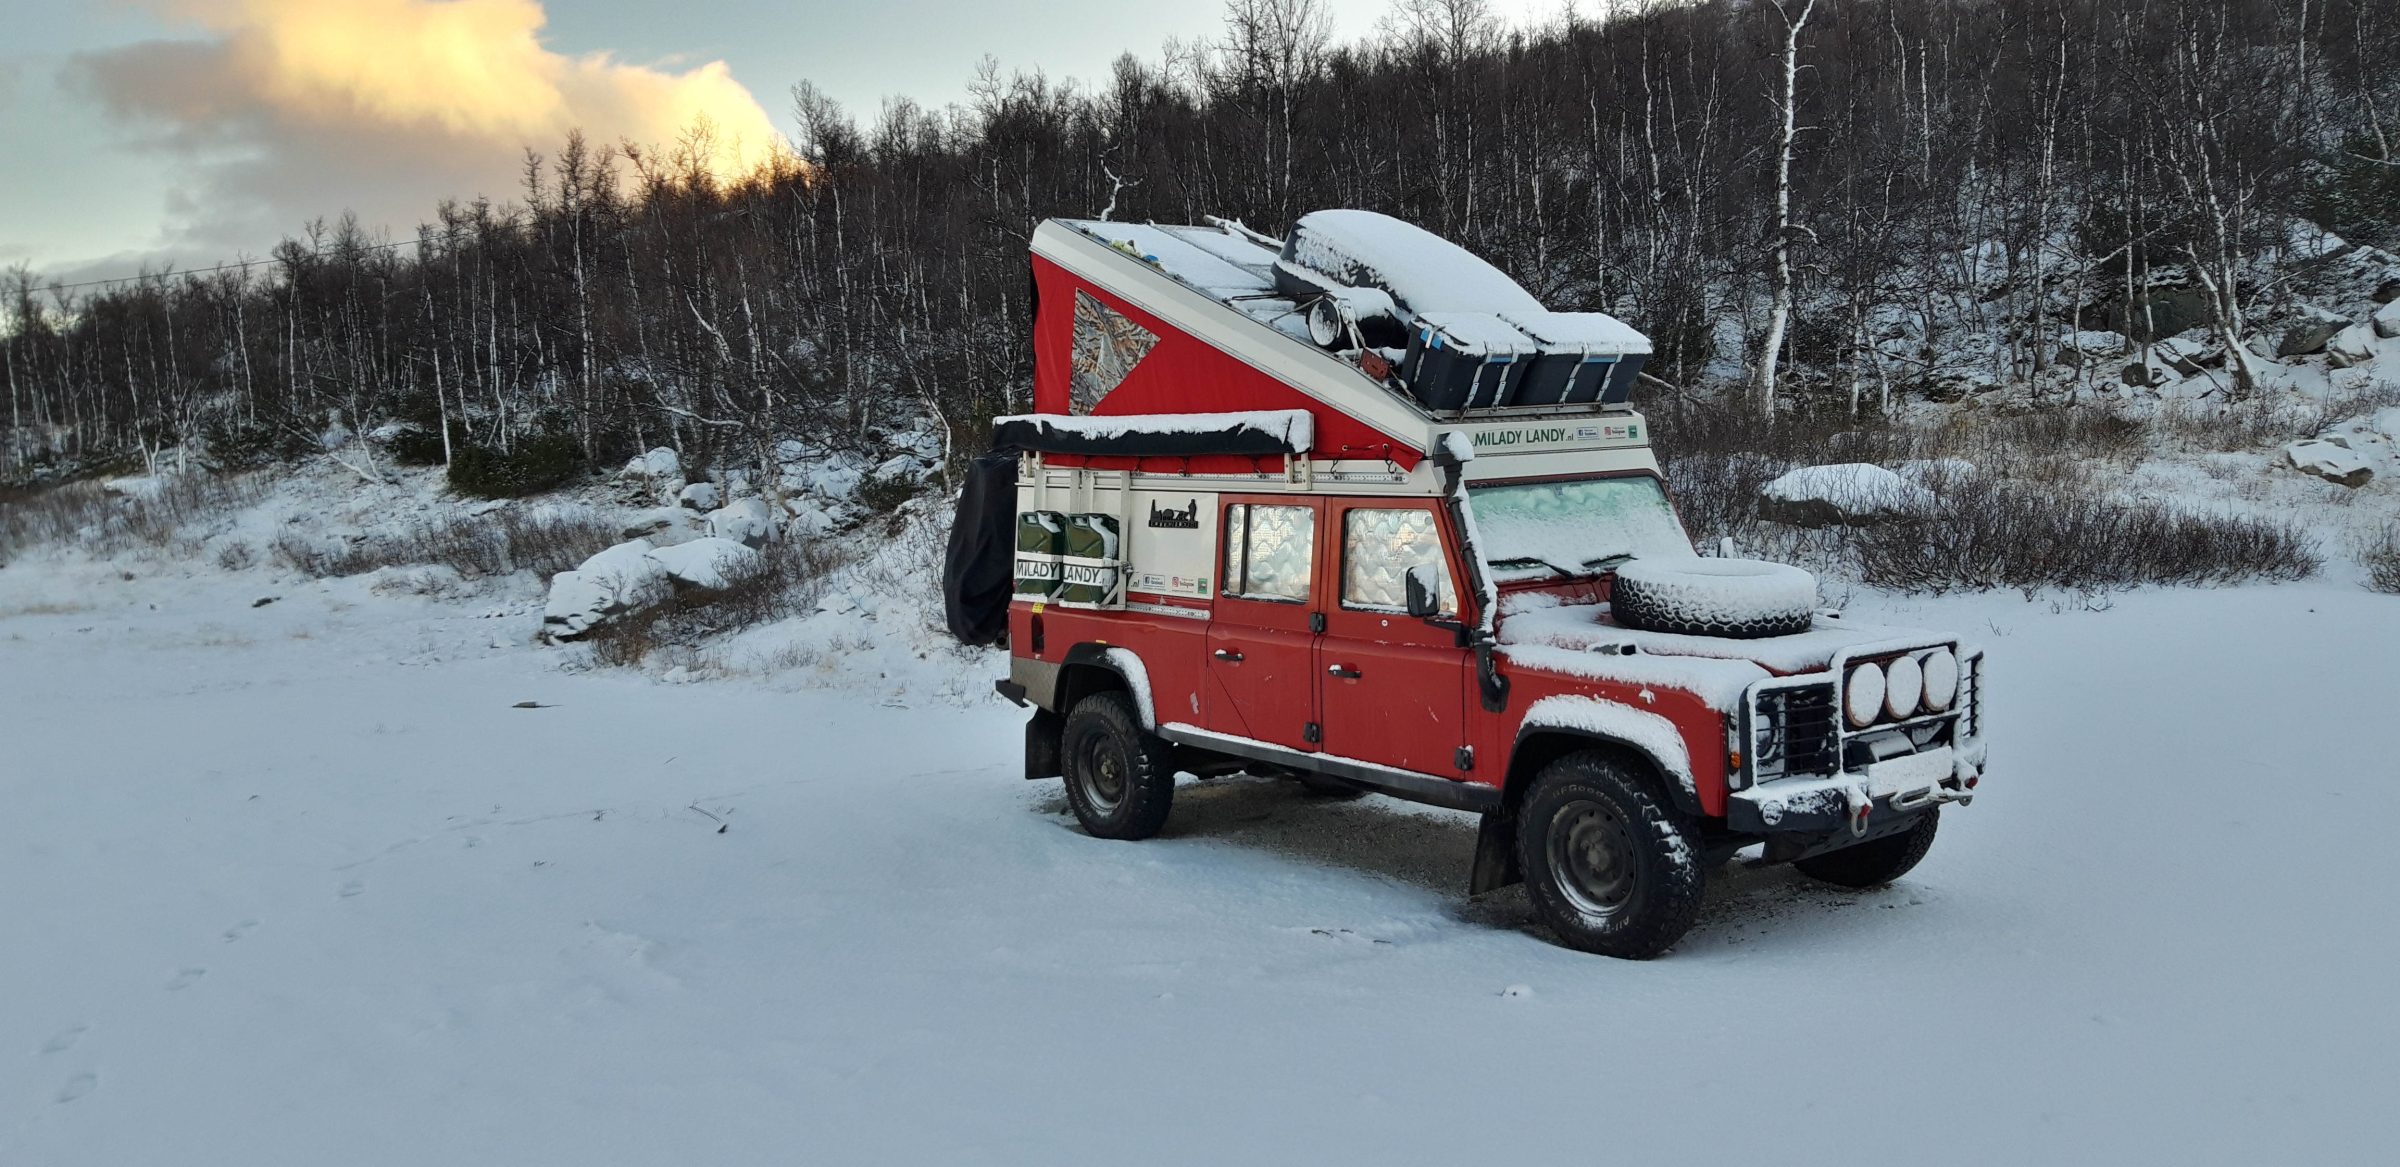 Mattina sulla neve | Intorno al Mar Baltico in inverno